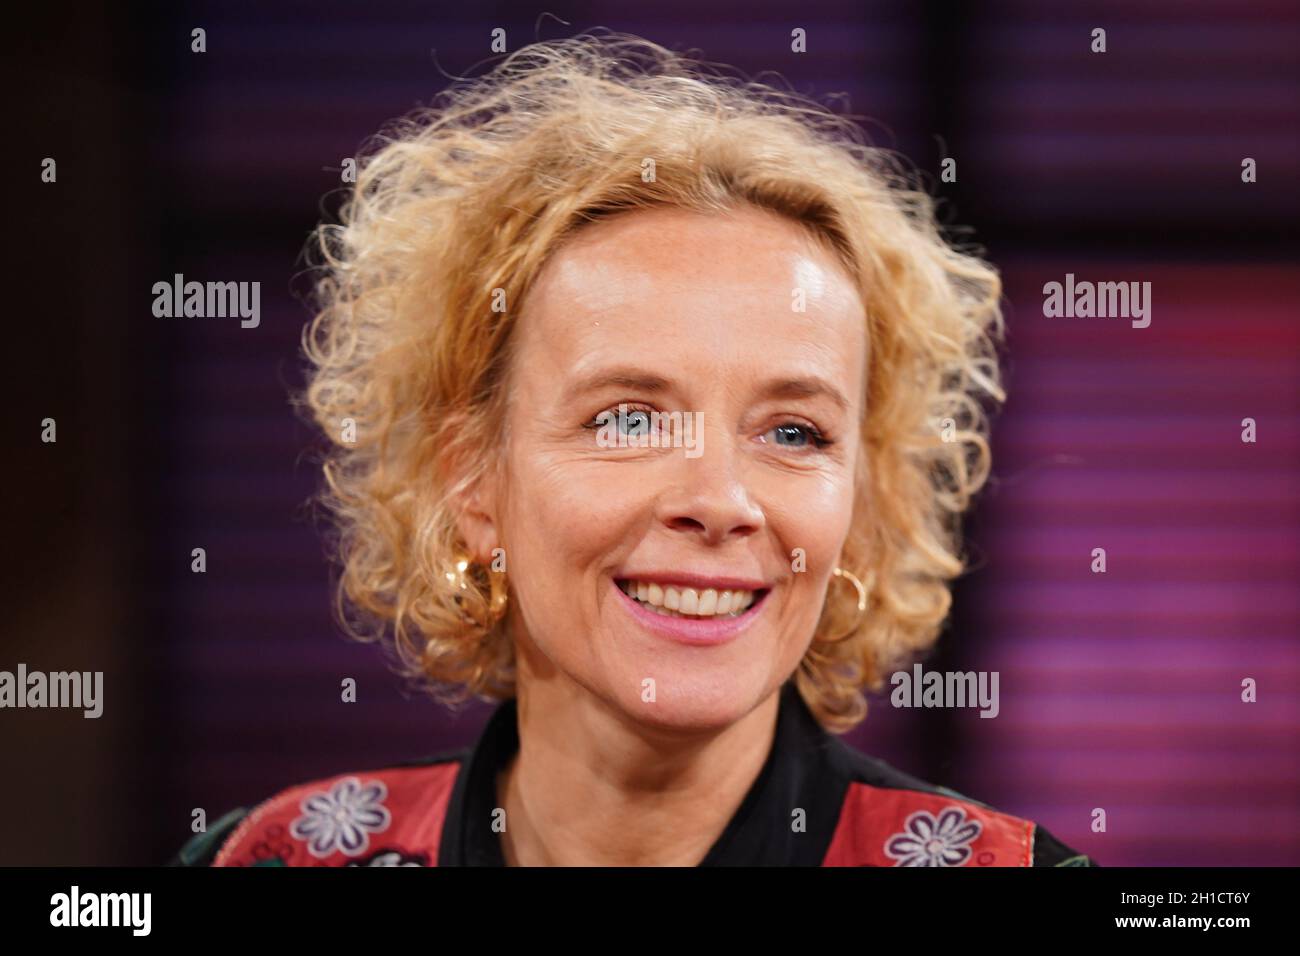 28.02.2020, Koeln, Katja Riemann im Portrait bei der WDR Fernseh Talkshow Koelner Treff Stock Photo